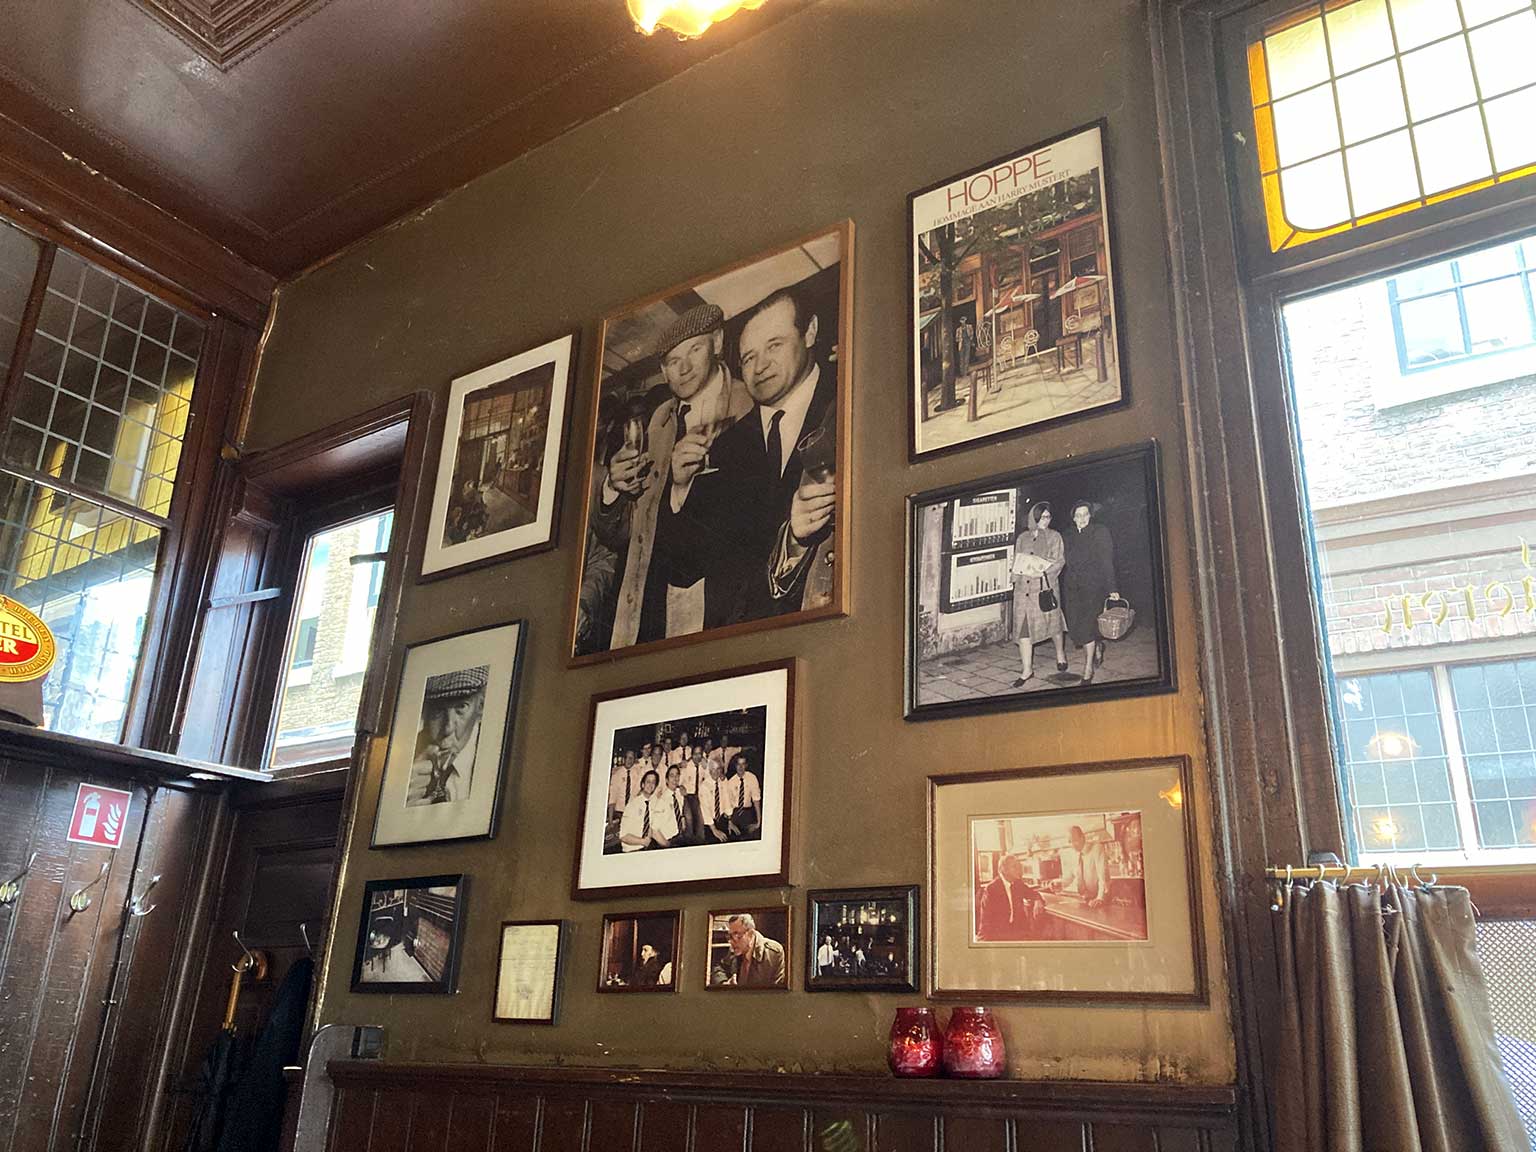 Old photos on the wall inside Café Hoppe, Amsterdam